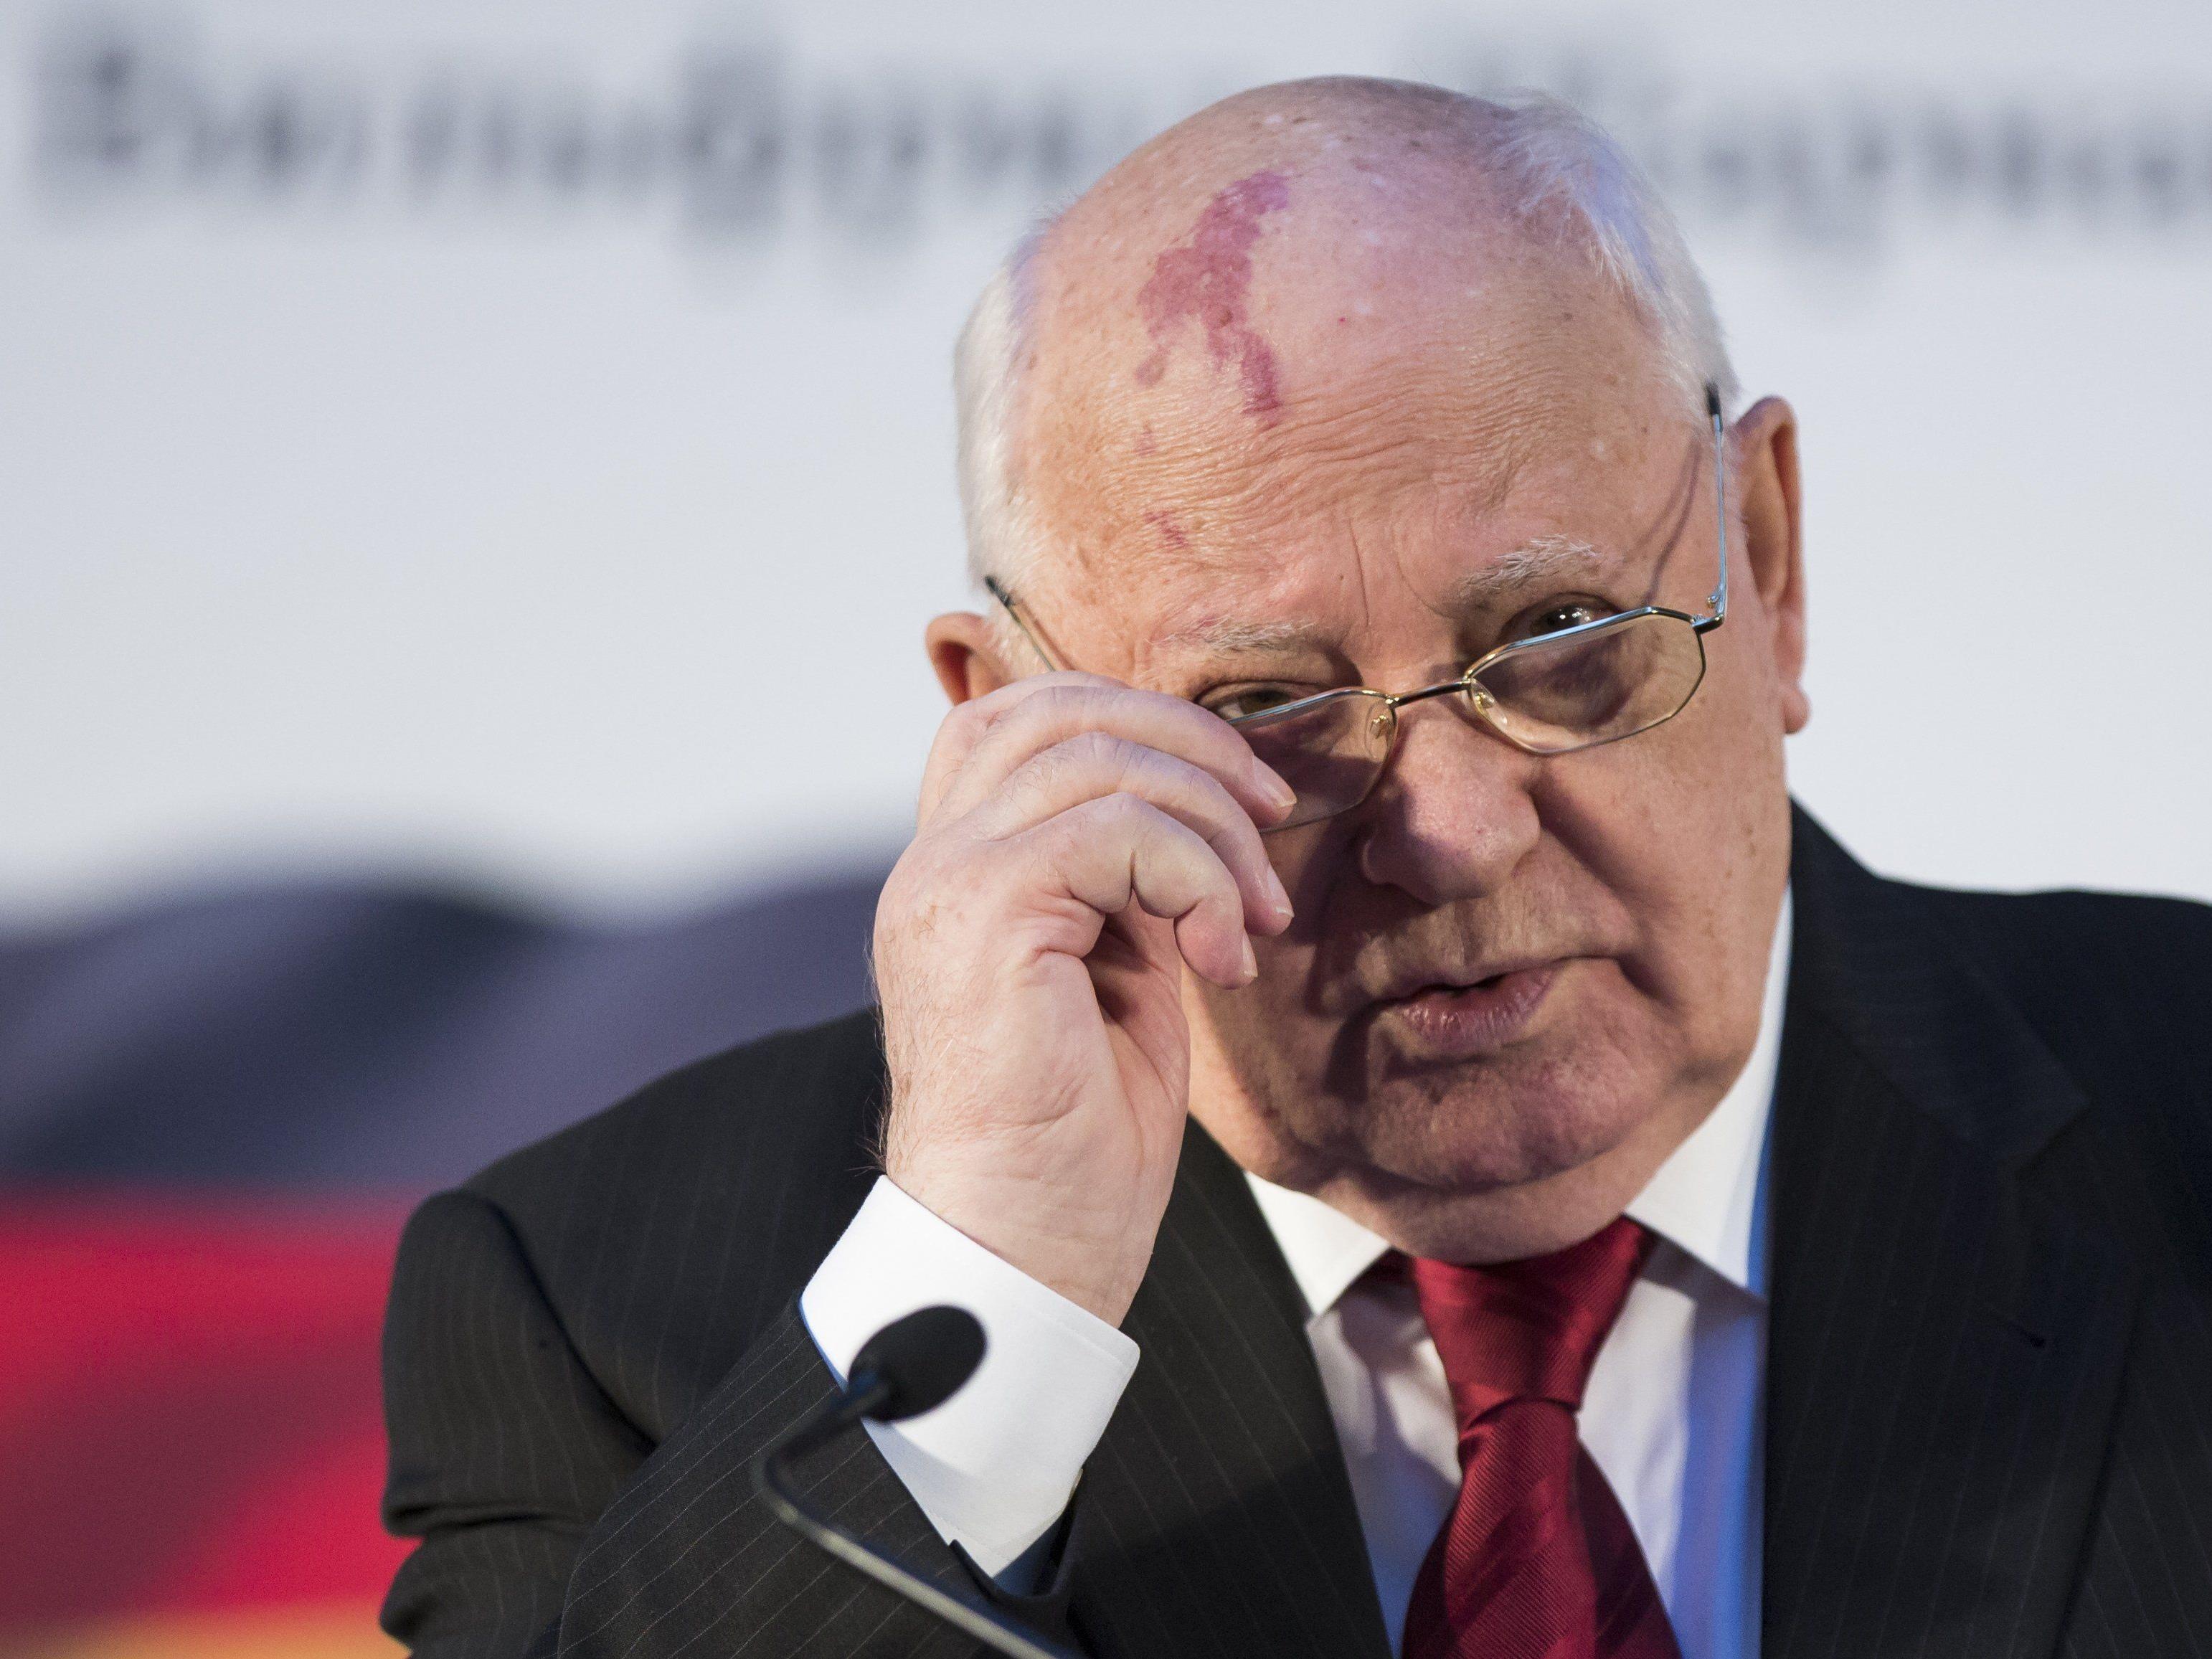 Gorbatschow zieht in "Das neue Russland" bittere Bilanz.